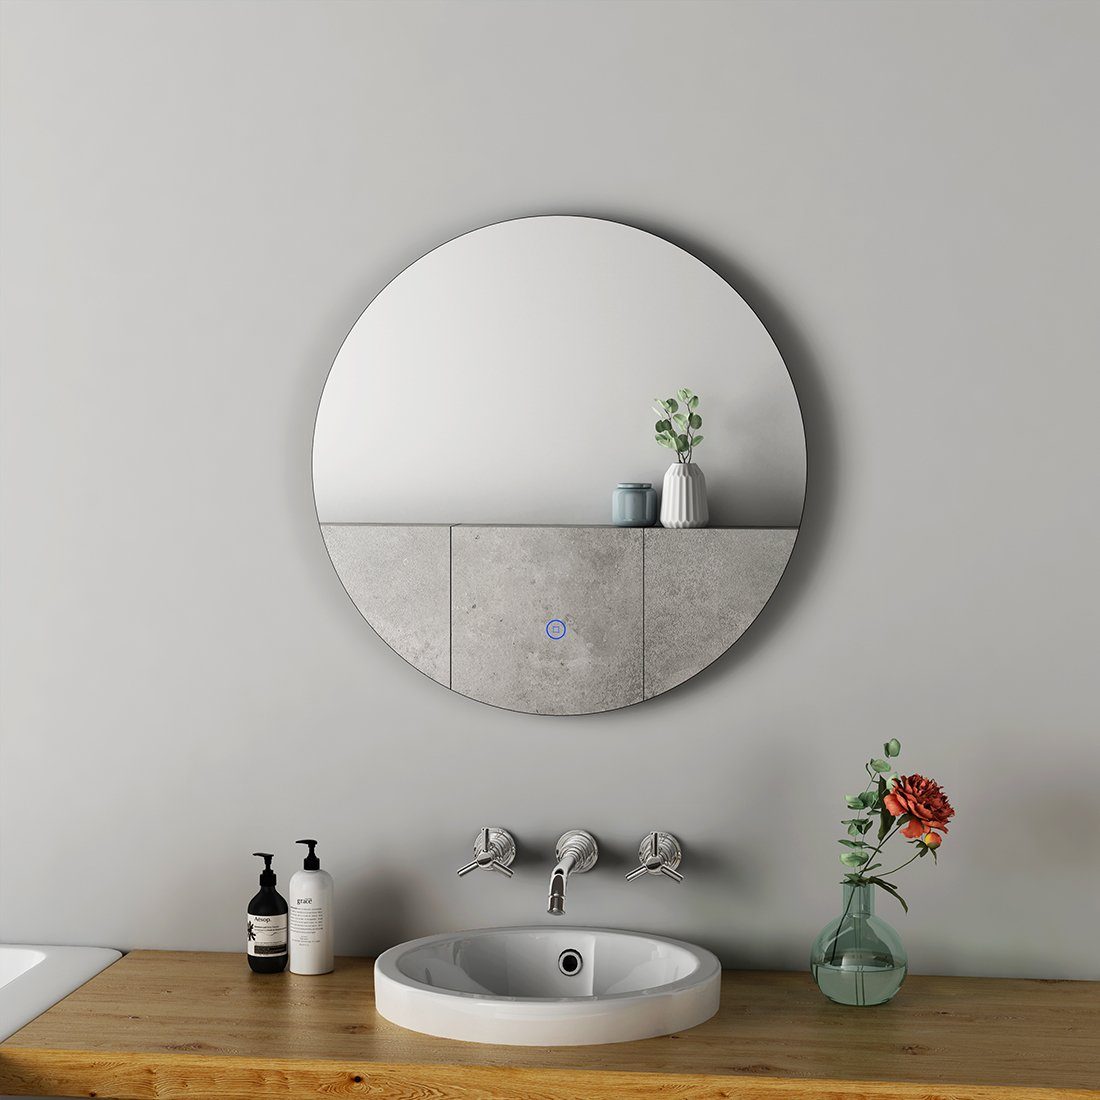 S'AFIELINA Wandspiegel Rund Badezimmerspiegel, 60cm,Touch mit Badspiegel LED Lichtspiegel Schalter,Kaltweiß 6500K,IP44 Beleuchtung